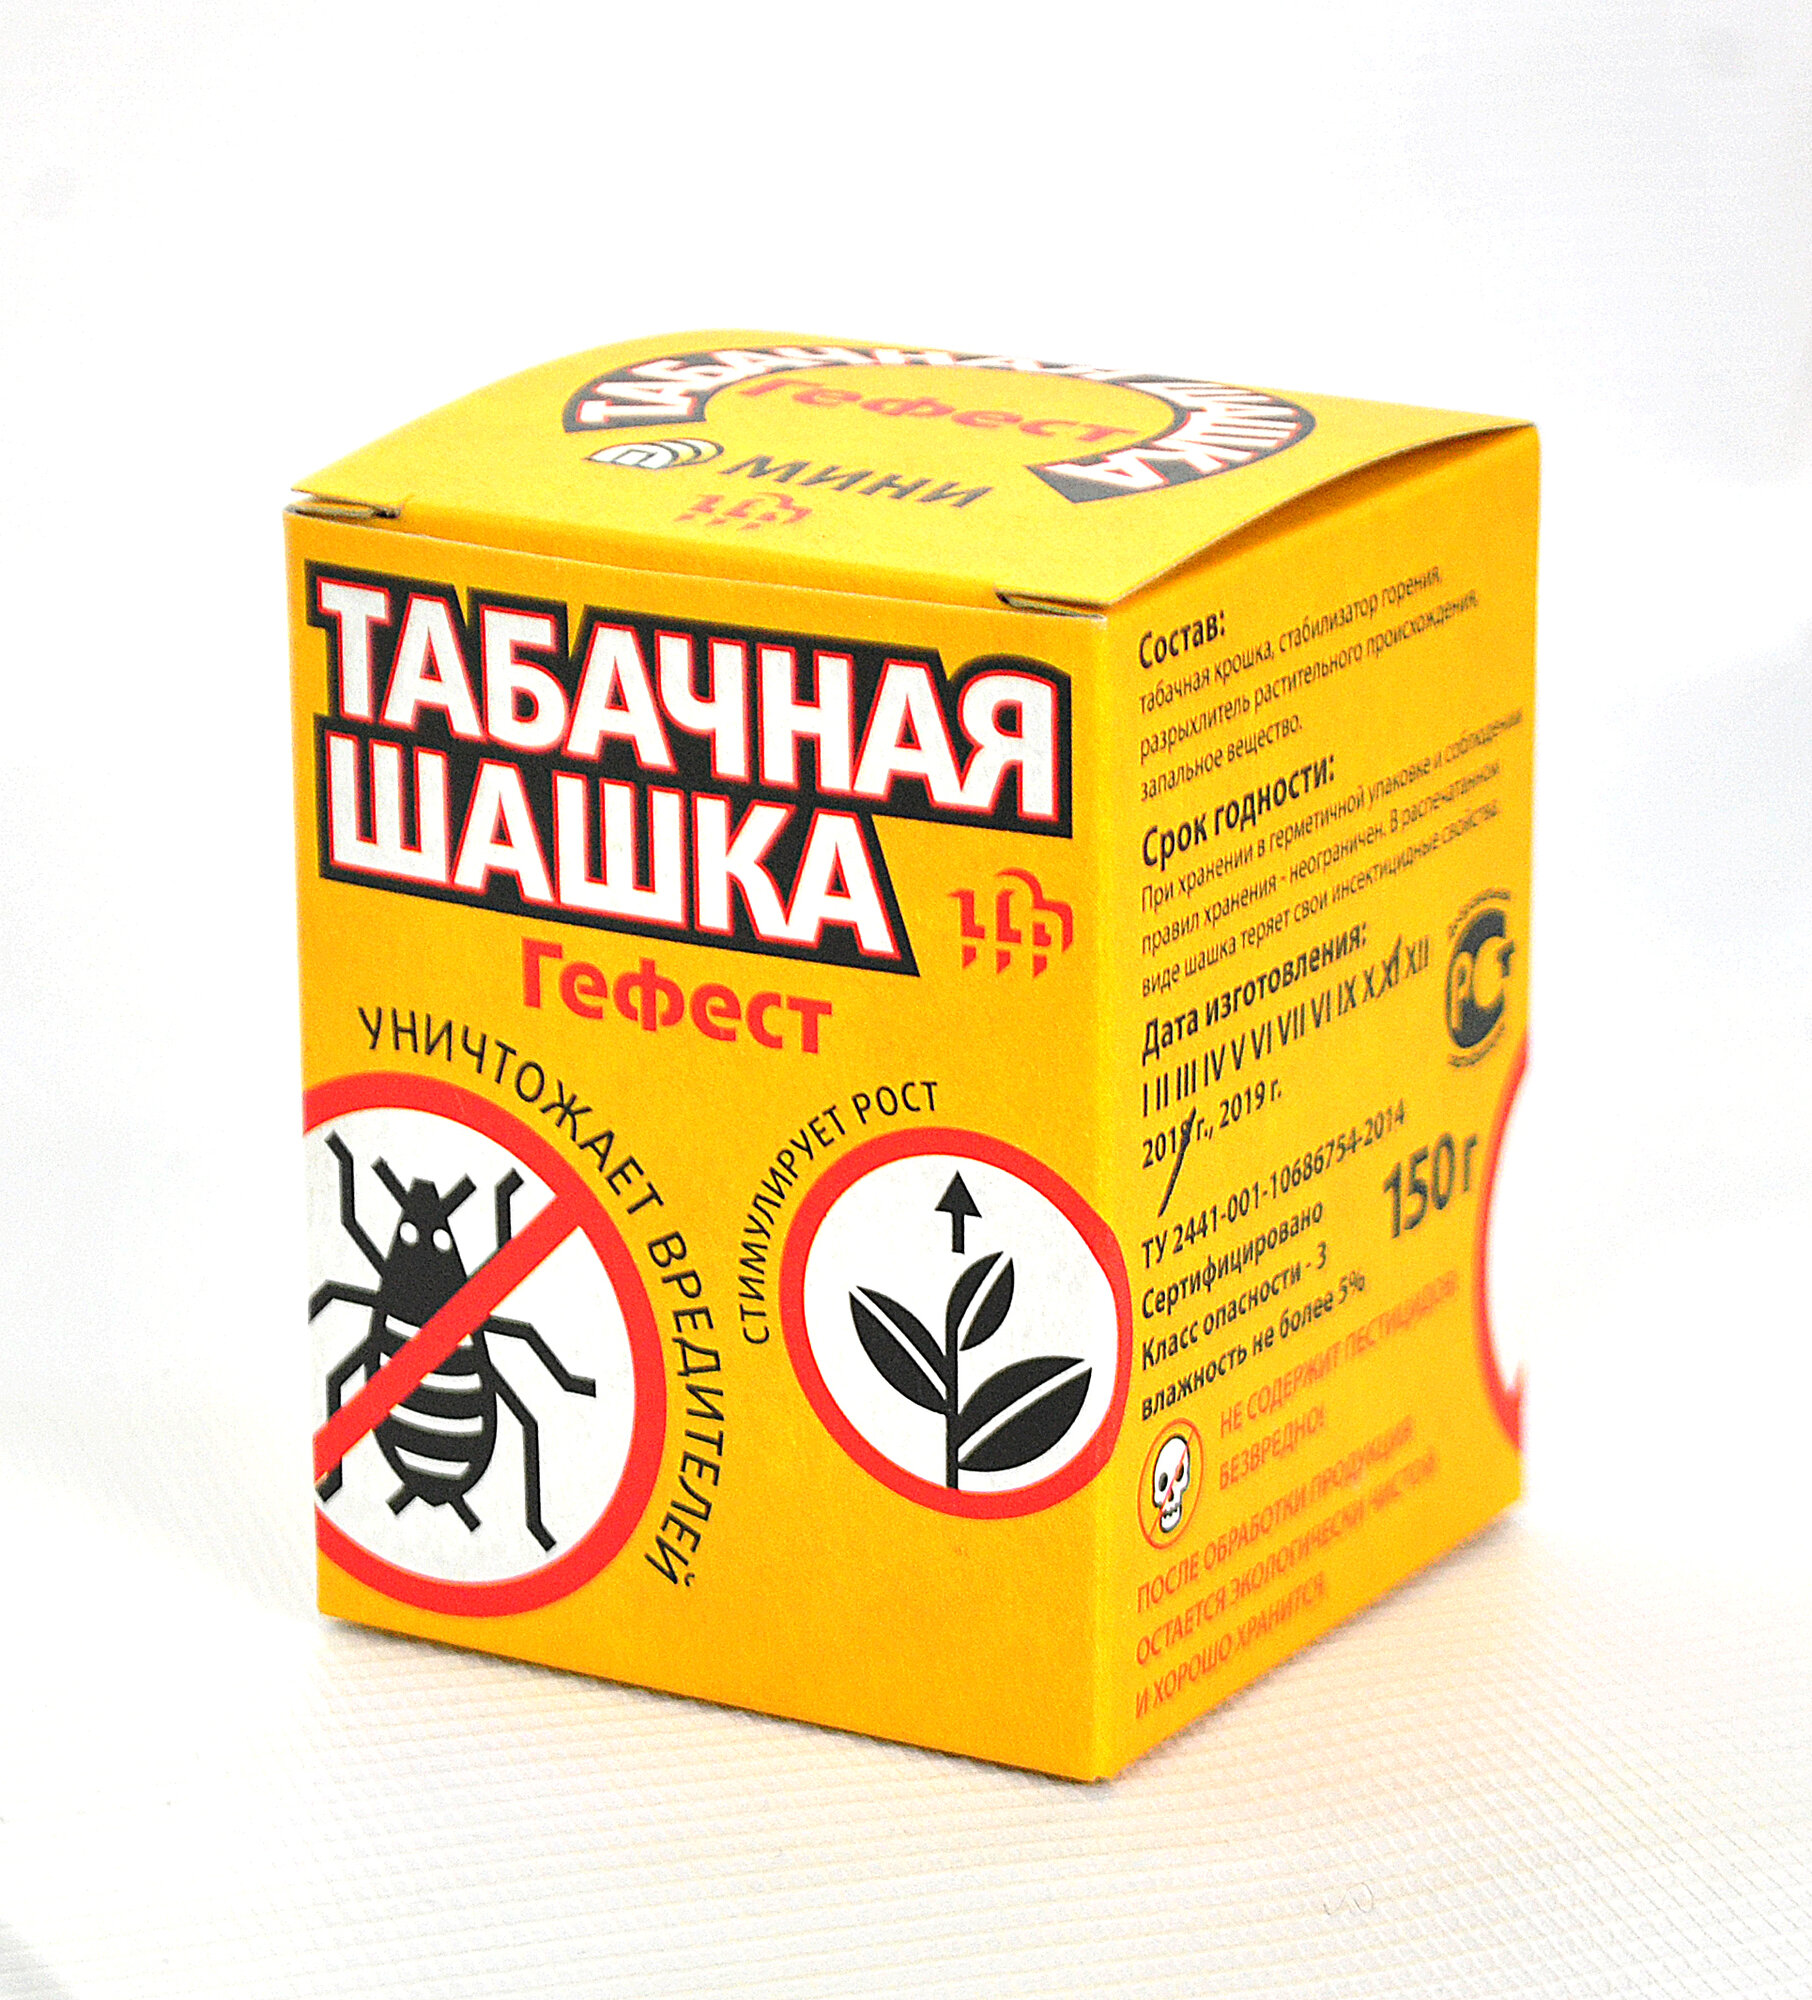 Табачная шашка 2шт. - инсектицидная для теплиц Гефест Защита растений 220 г